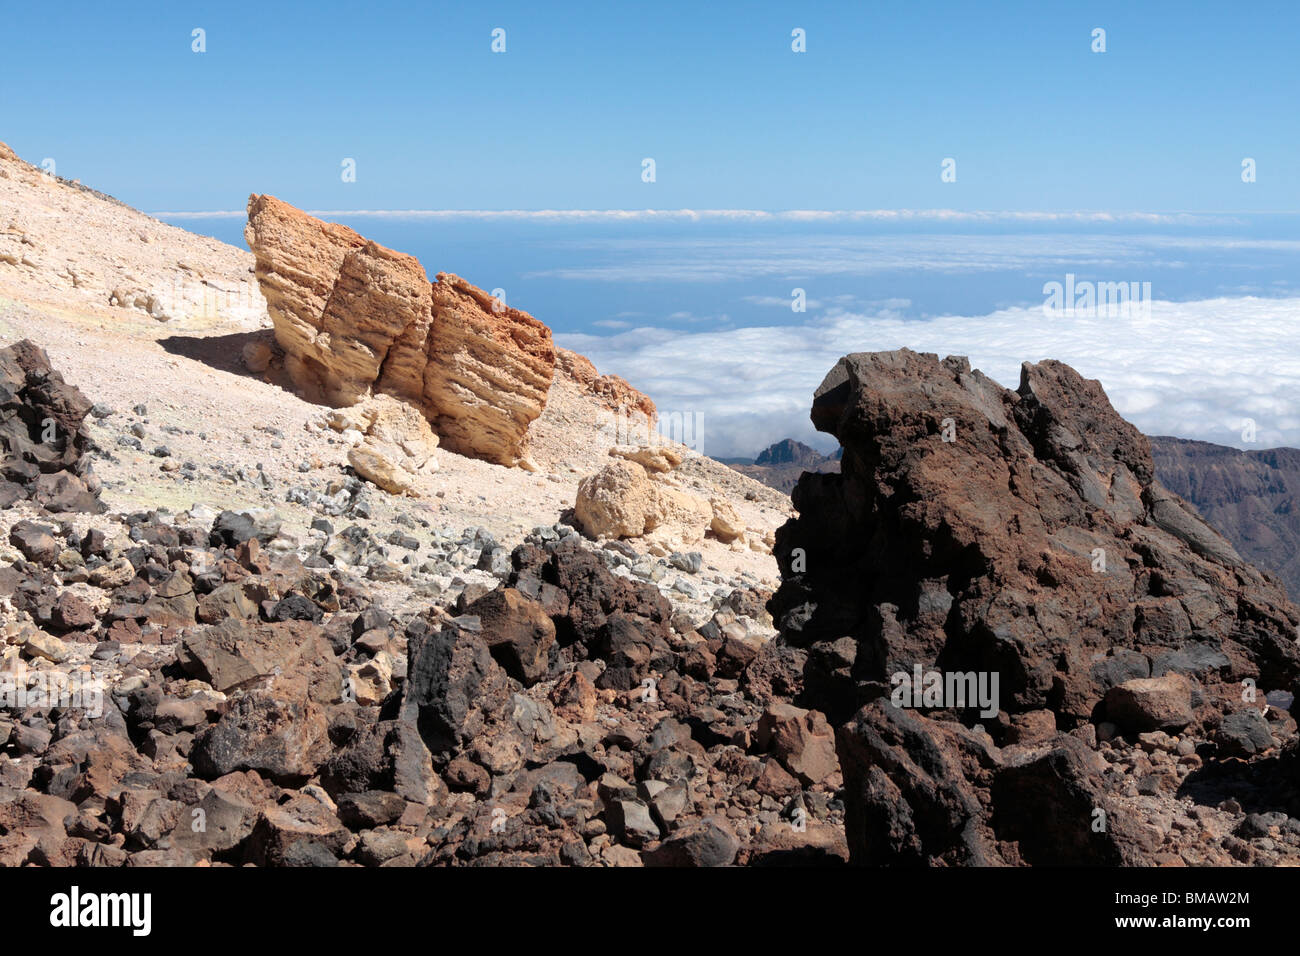 Kontrast in Gesteinsarten auf der Seite der Pico del Teide Teneriffa CanaryIslands Spanien Stockfoto